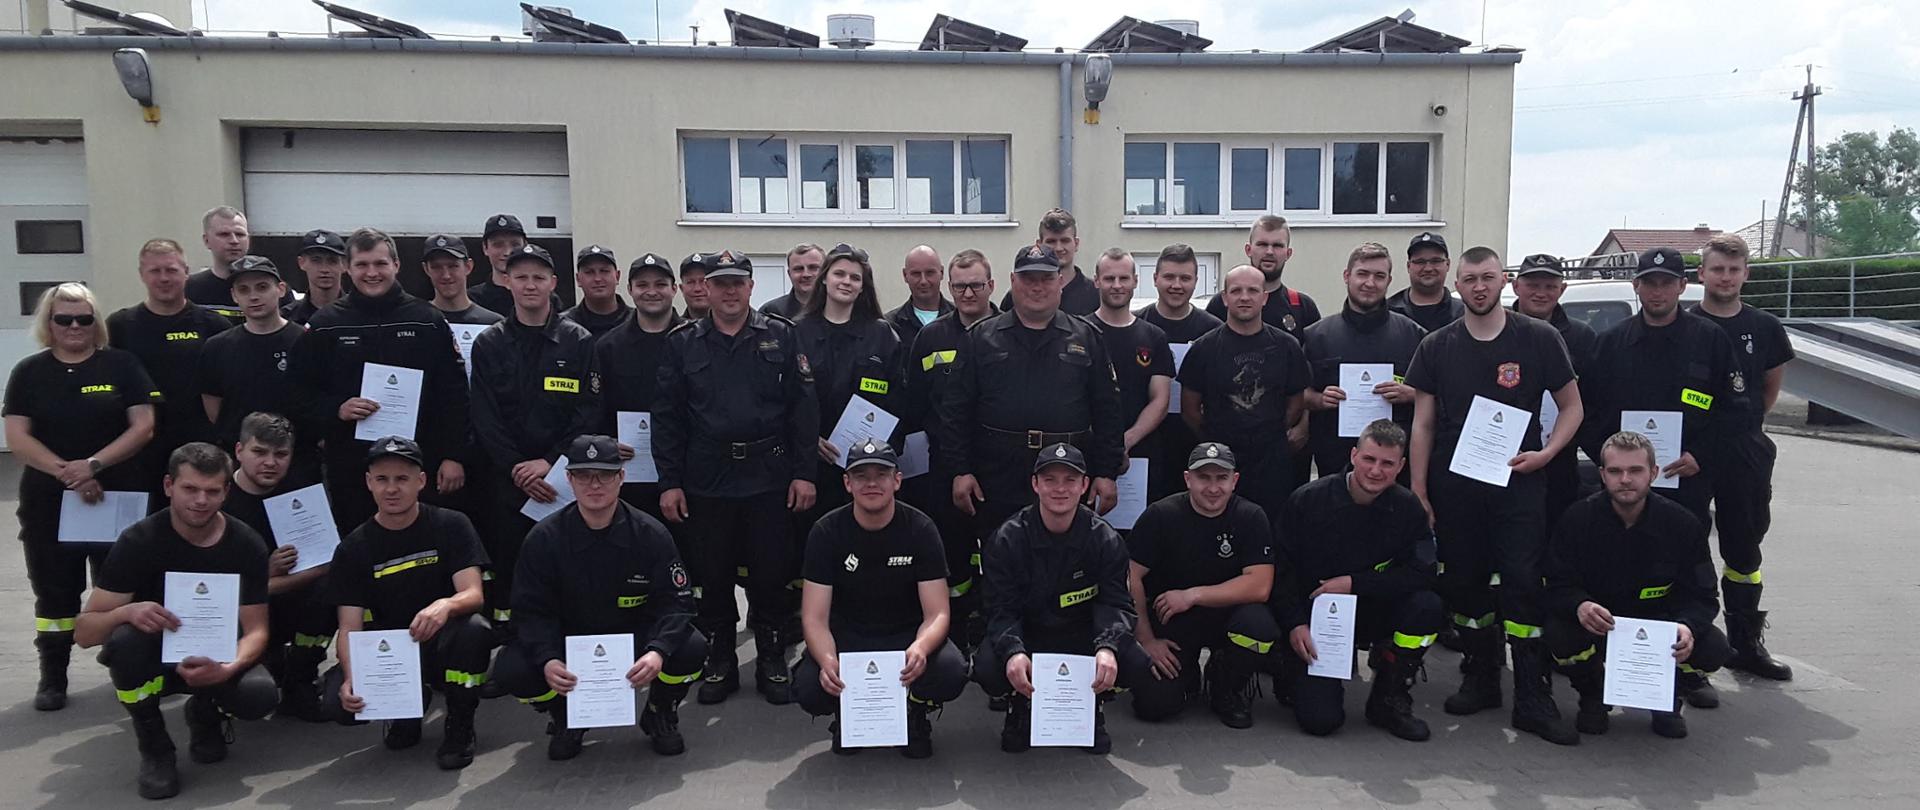 Zdjęcie przedstawia 40 uczestników Szkolenia Kierowców Konserwatorów sprzętu ratowniczego OSP na tle budynku Komendy Powiatowej PSP w Koluszkach